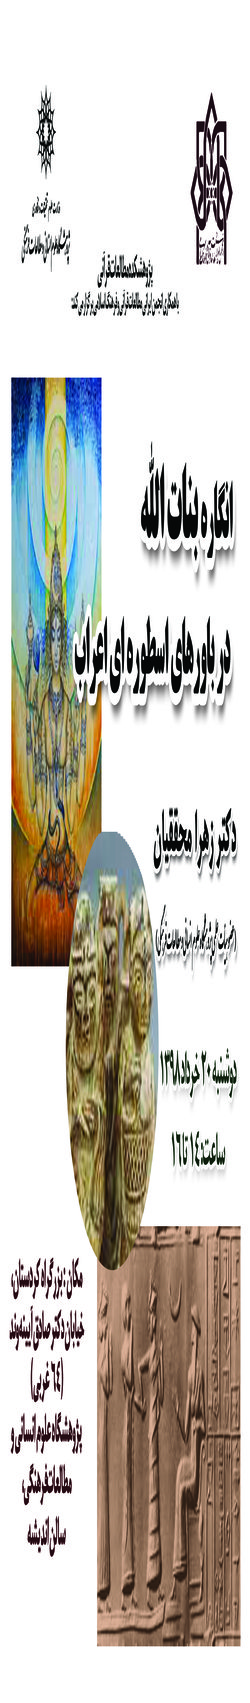 سخنرانی با عنوان « انگاره بنات الله در باورهای اسطوره ای اعراب» برگزار می شود